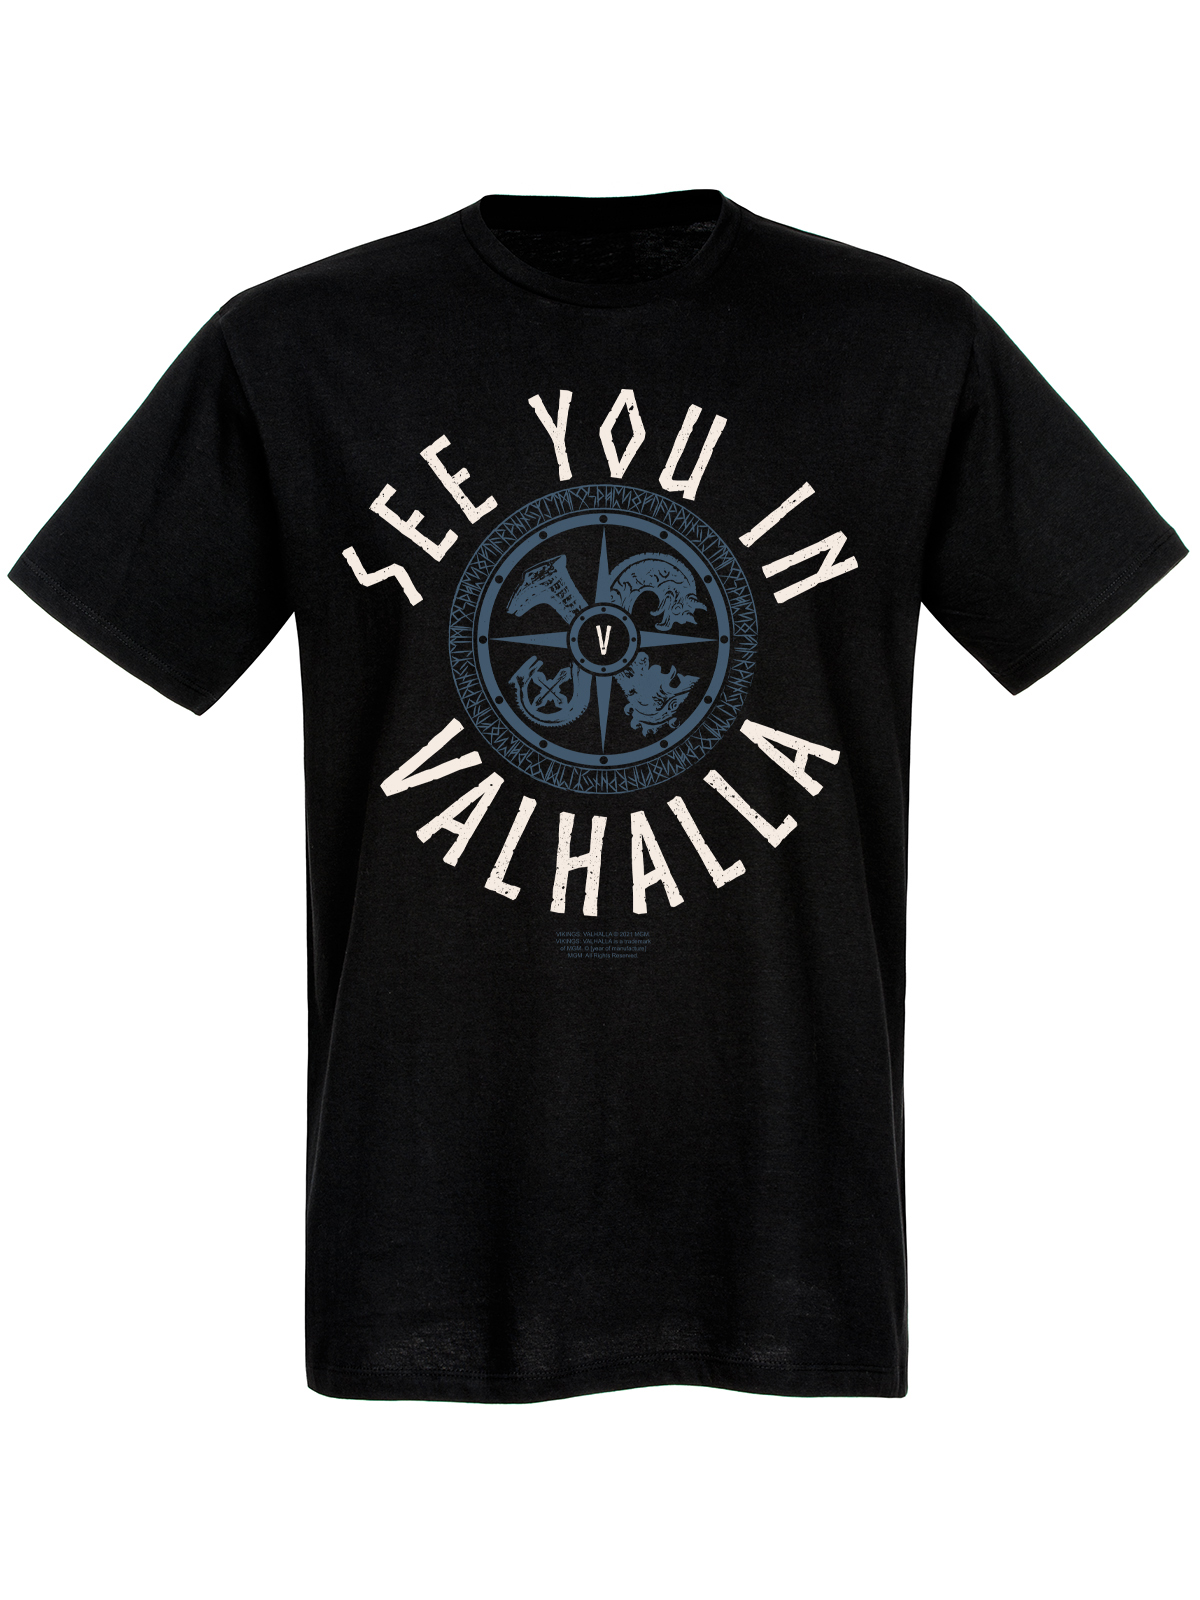 Vikings Valhalla See you in Valhalla Herren T-Shirt schwarz